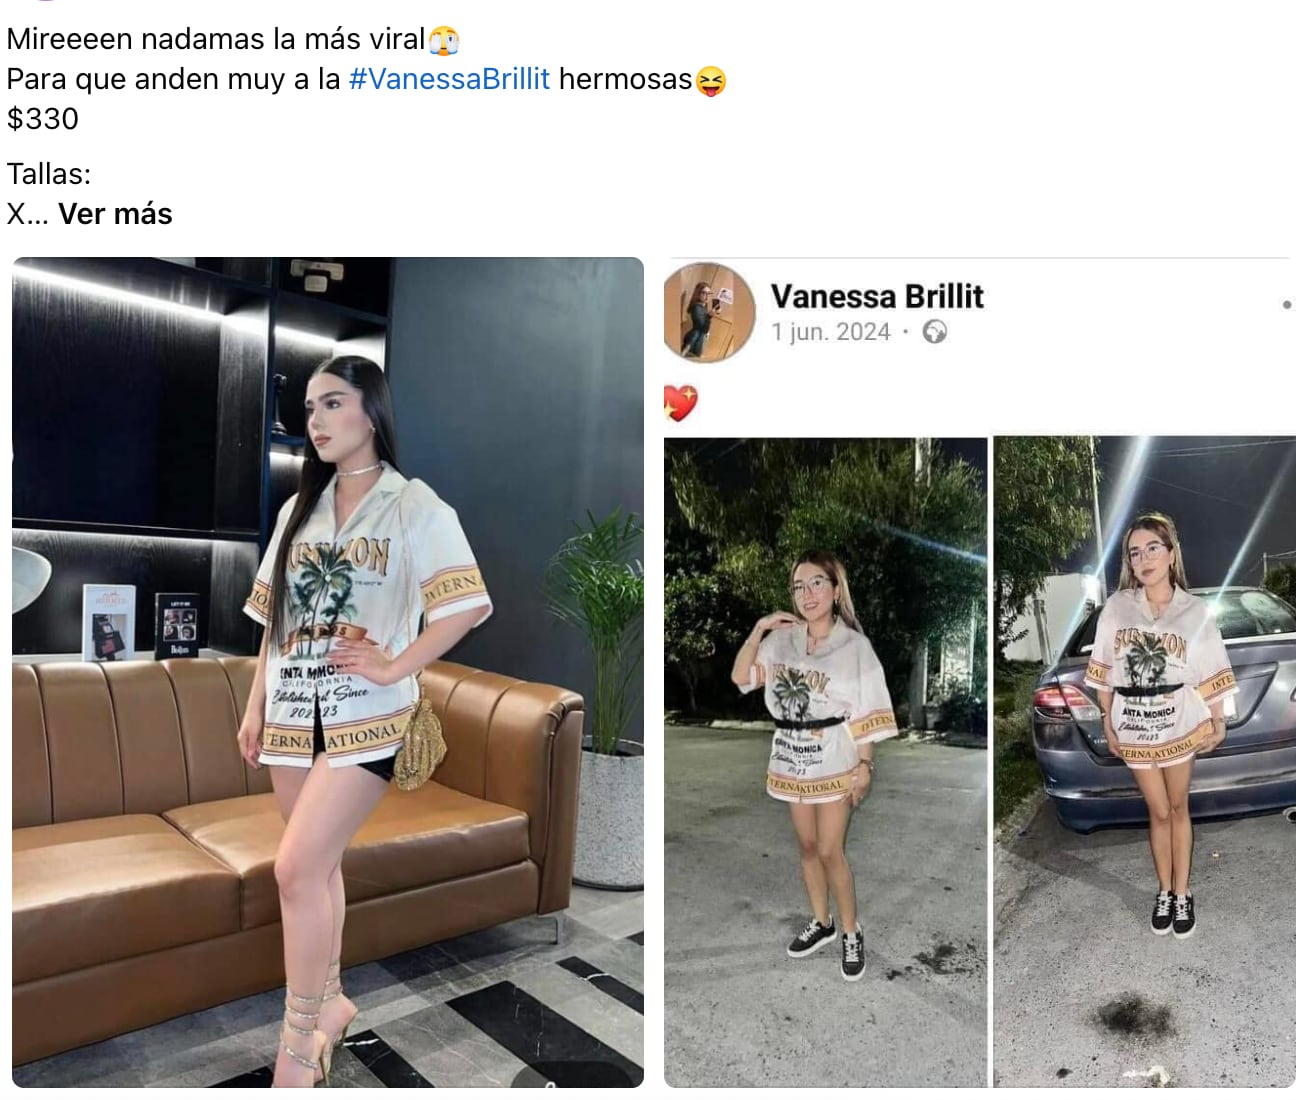 Vanessa Brillit inspira memes tras lo sucedido en su fiesta